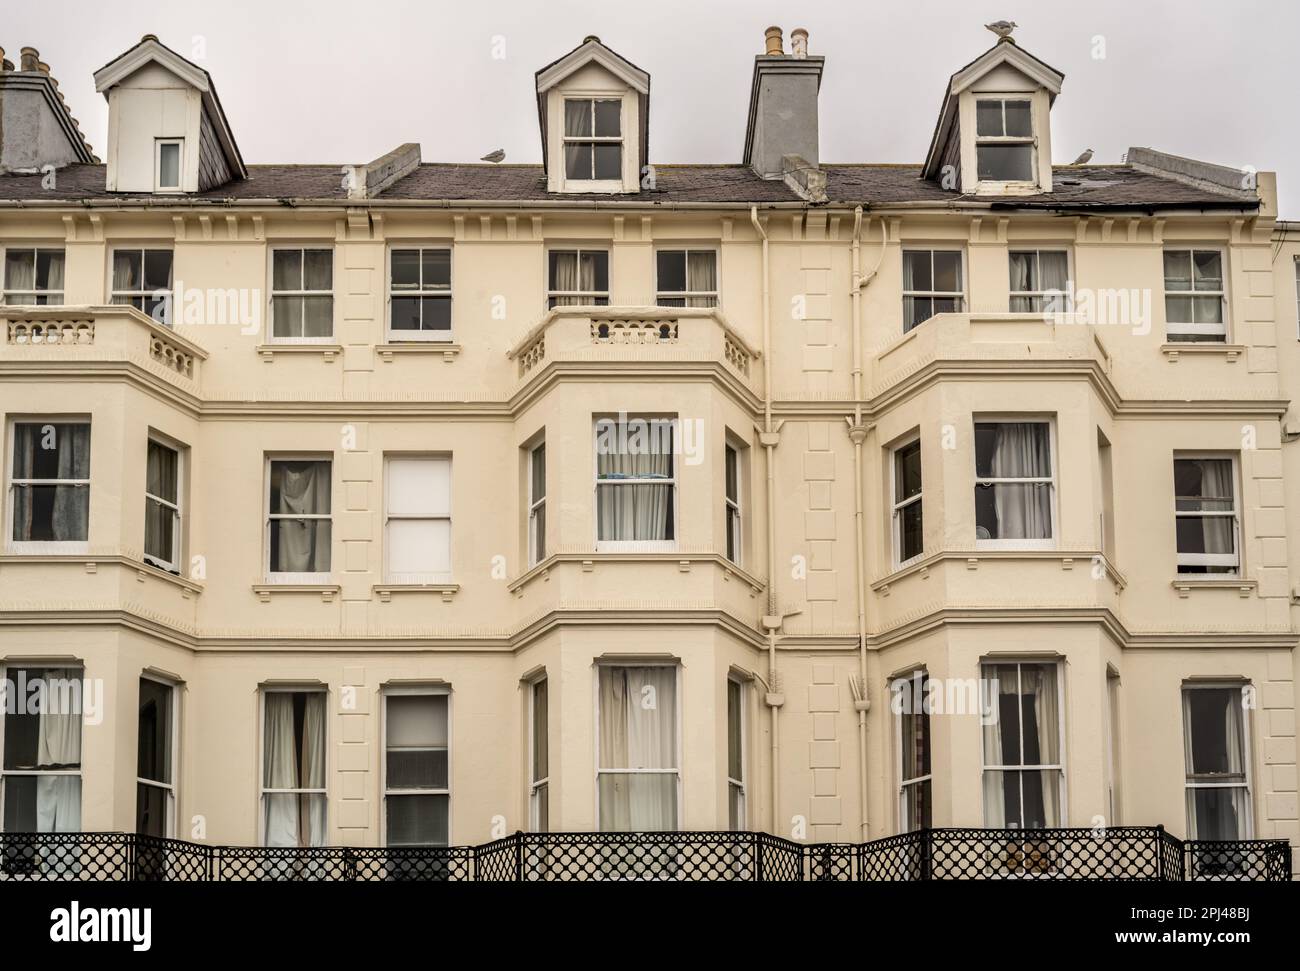 Der Eastbourne Council äußert Bedenken hinsichtlich des Schutzes von Asylbewerbern in einem von der Innenverwaltung betriebenen Hotel. Zweihundert Asylsuchende Kinder, die untergebracht wurden Stockfoto